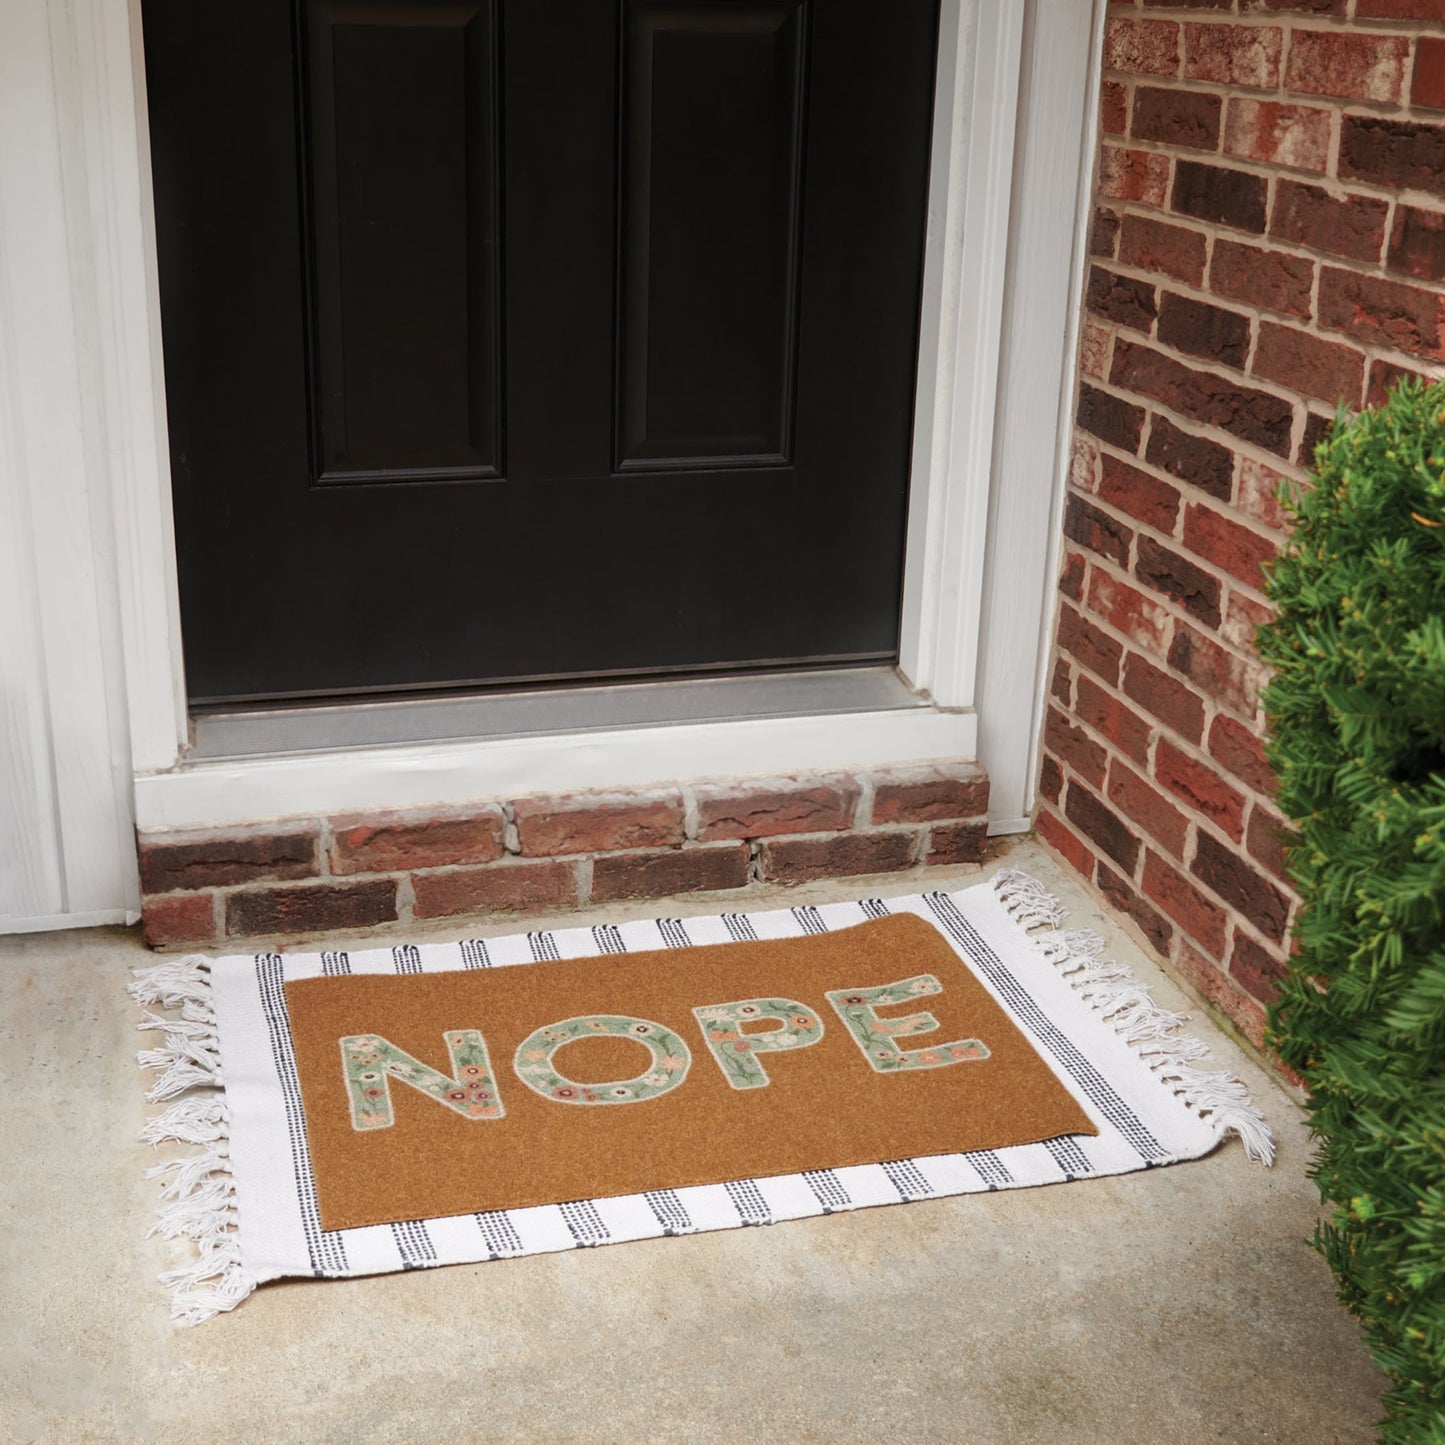 NOPE Floral Doormat Rug | Skid-resistant backing | Indoor/Outdoor Mat | 30" x 18"